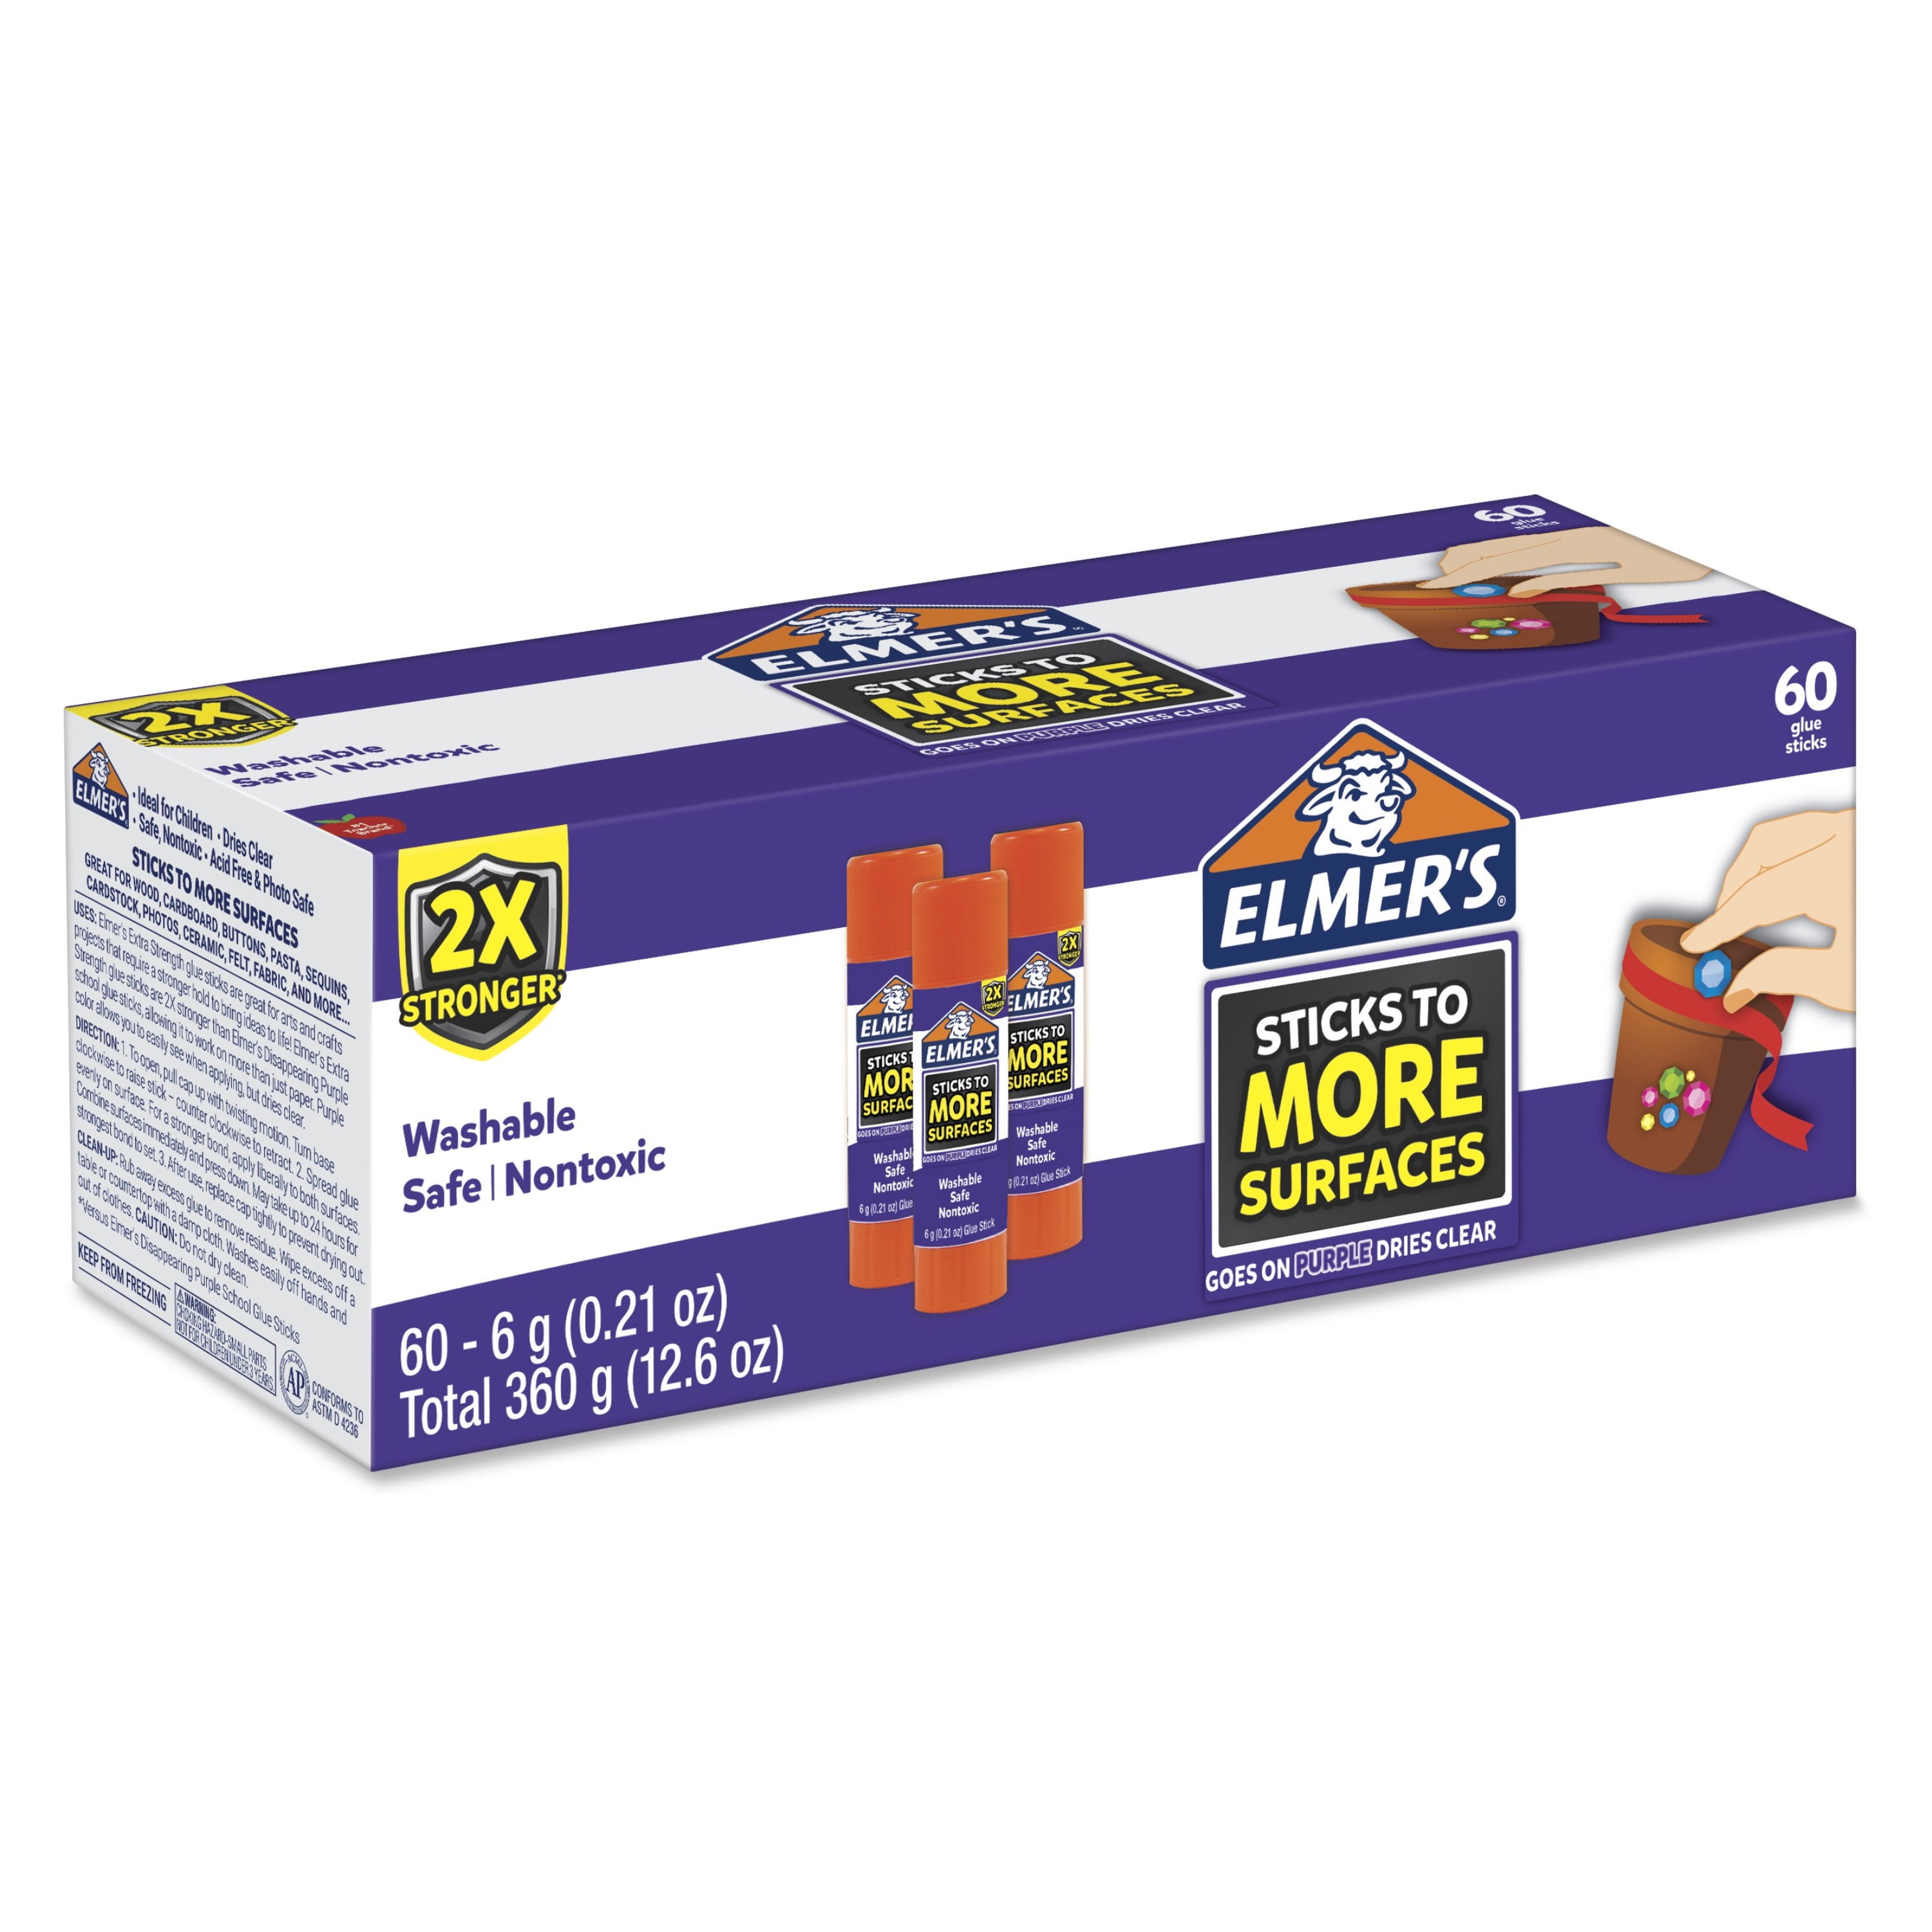 Elmer's Craft Bond Quick Dry Glue, 4 oz. 